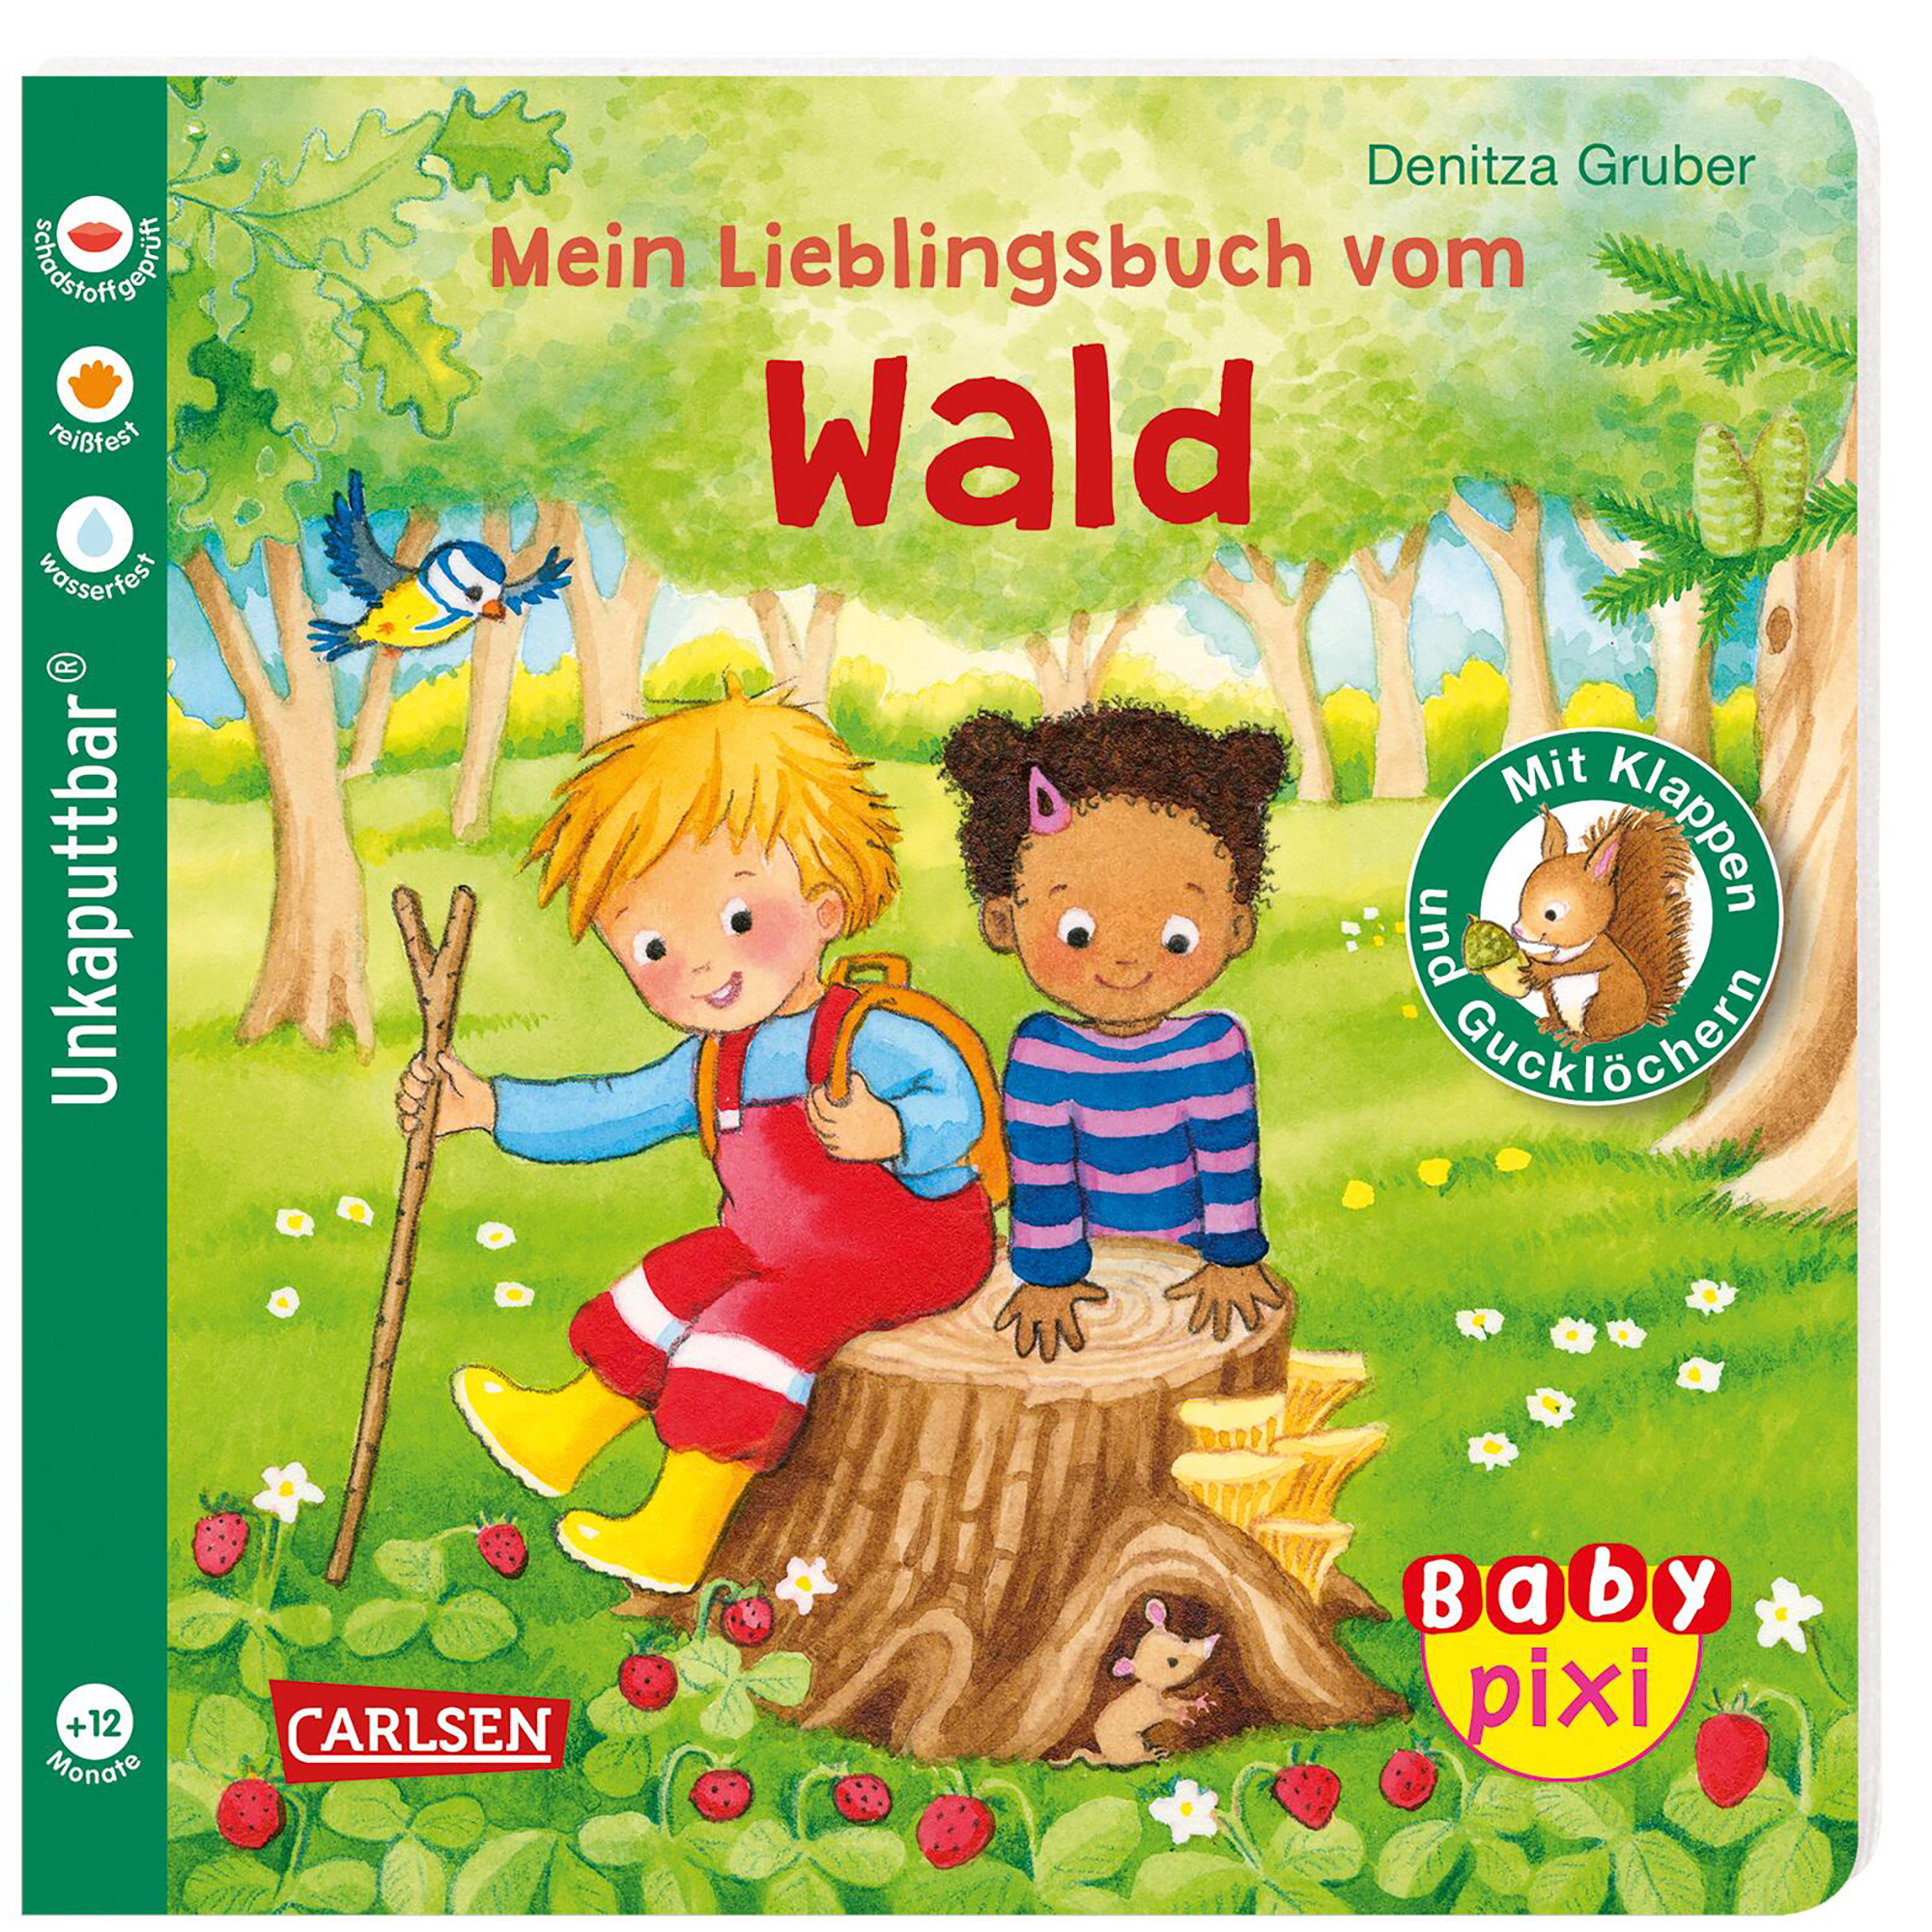 Baby Pixi (unkaputtbar) 129: Mein Lieblingsbuch vom Wald CARLSEN 2000584911905 1